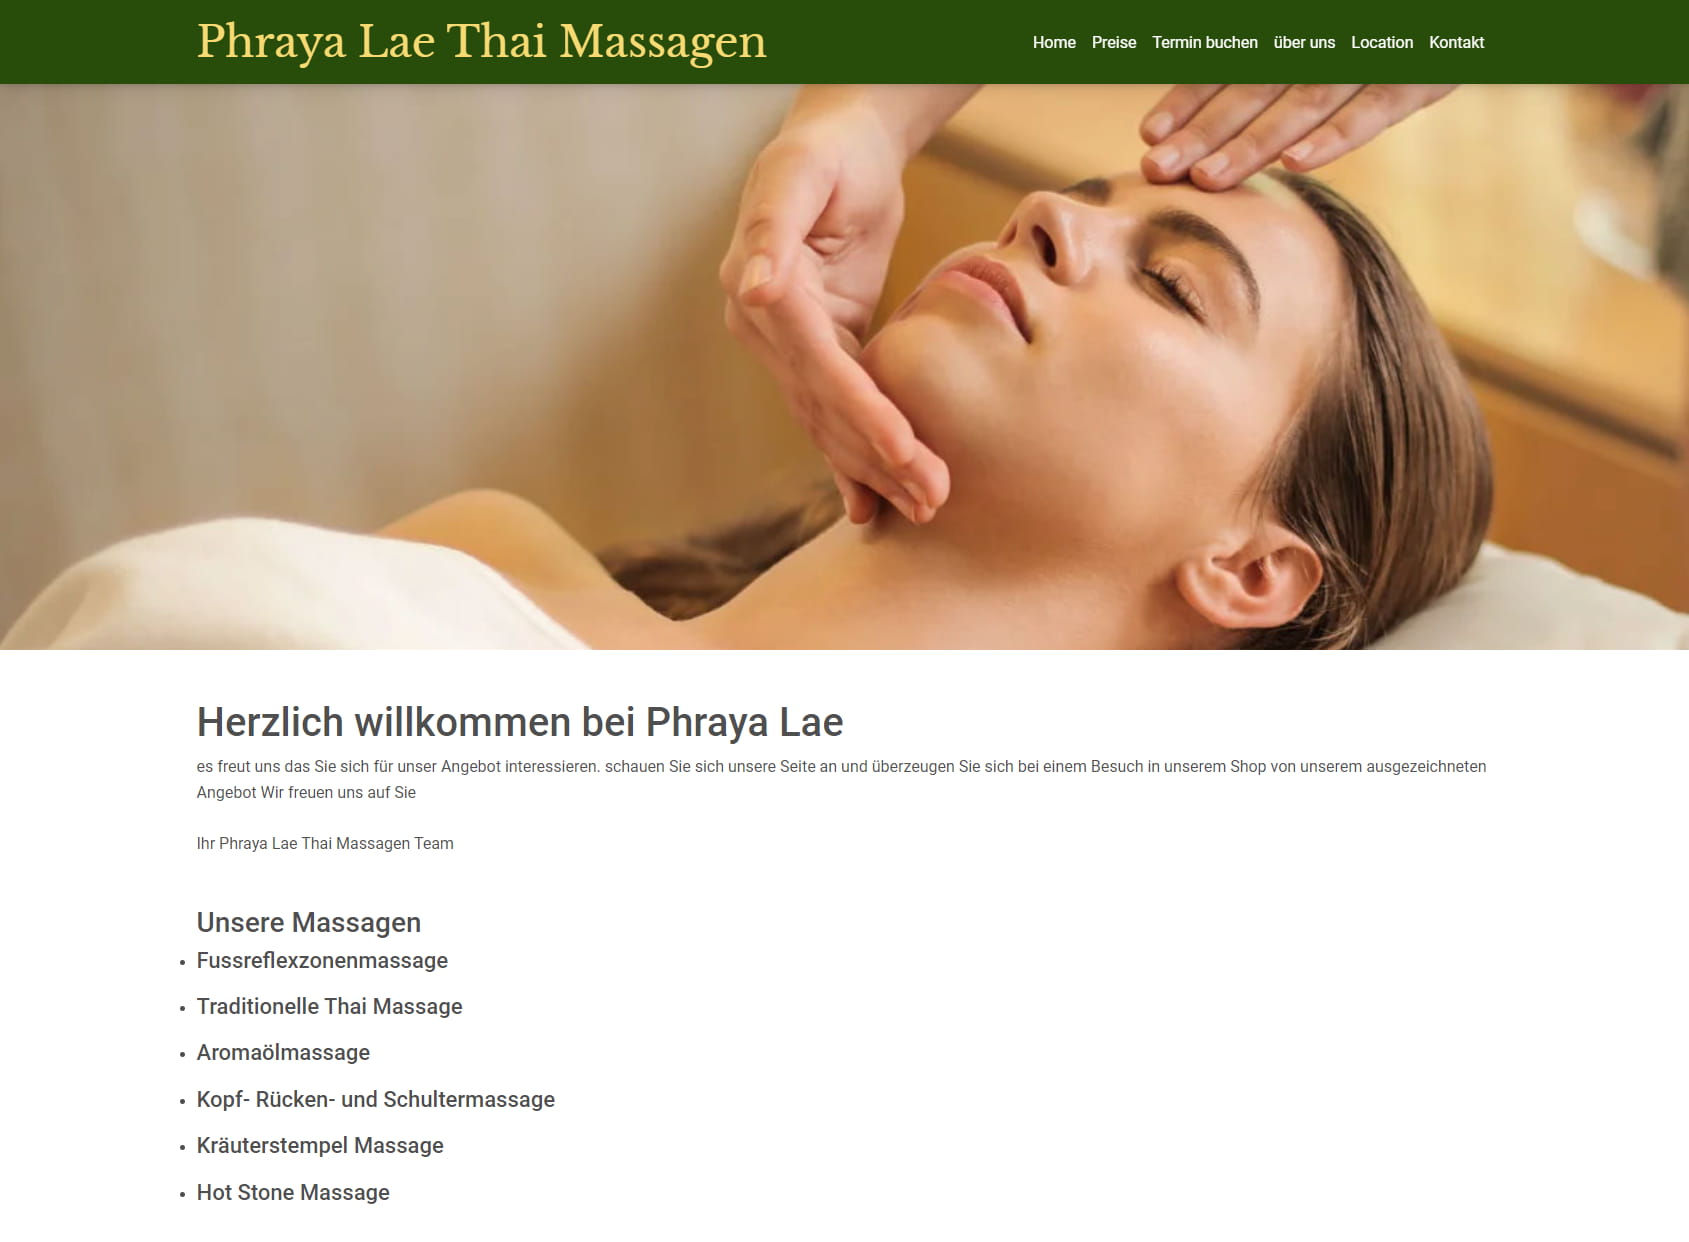 Phraya Lae Thai Massagen